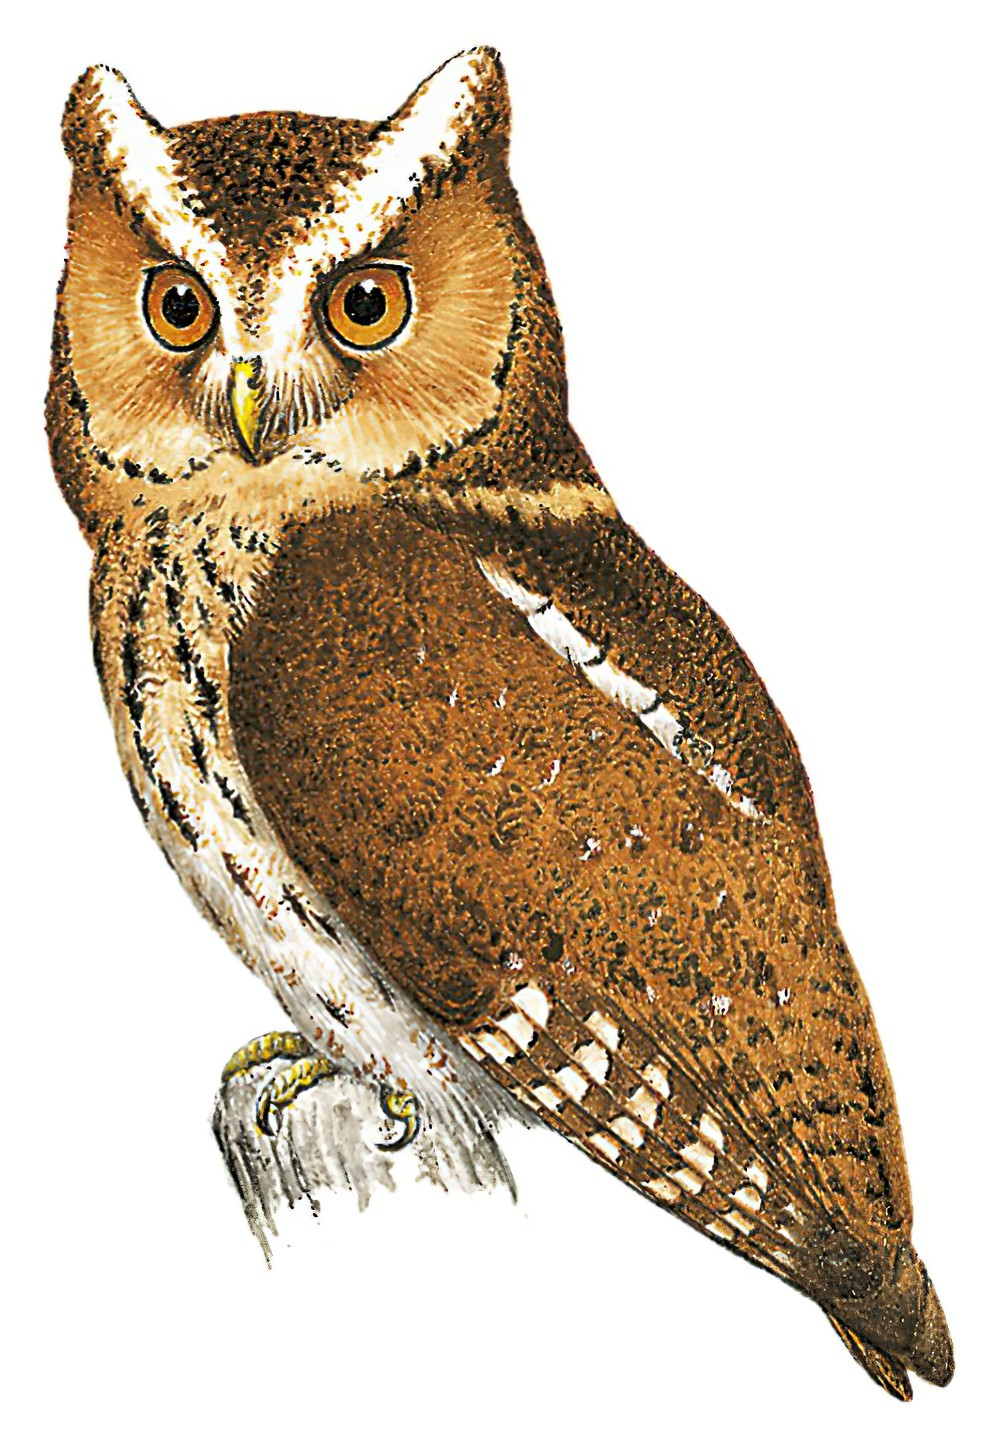 Javan Scops-Owl / Otus angelinae